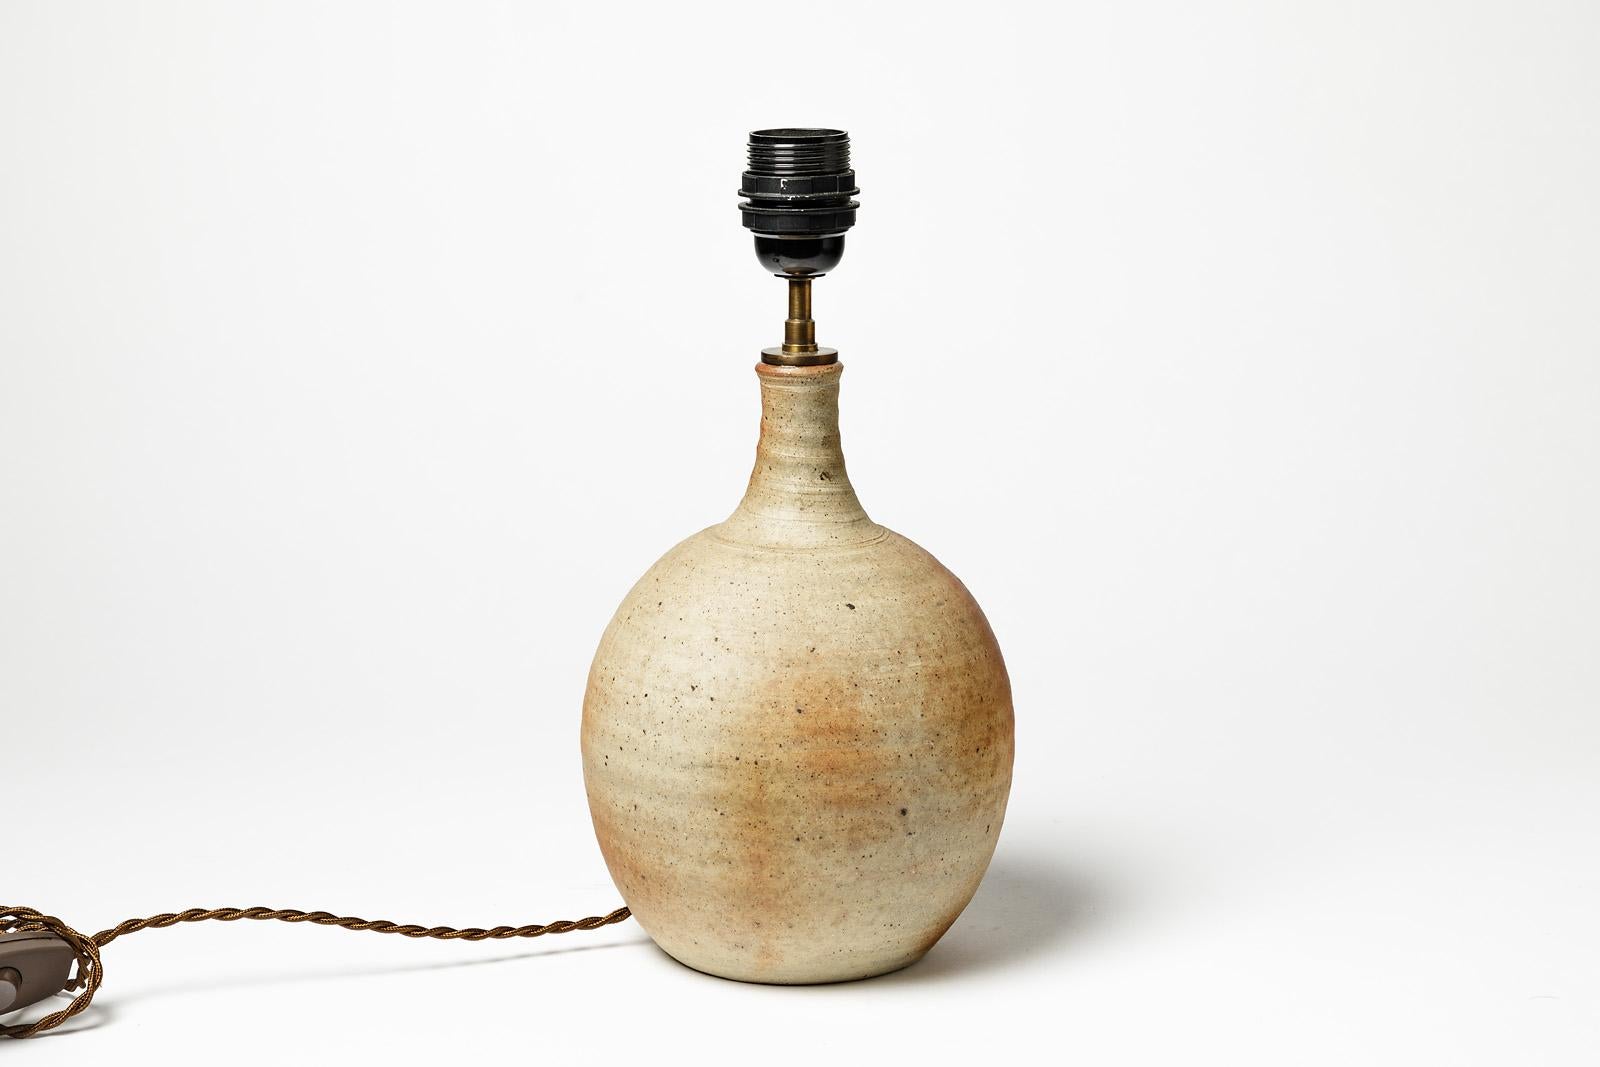 French Stoneware Ceramic Lamp by Alain Magne, circa 1970, La Borne